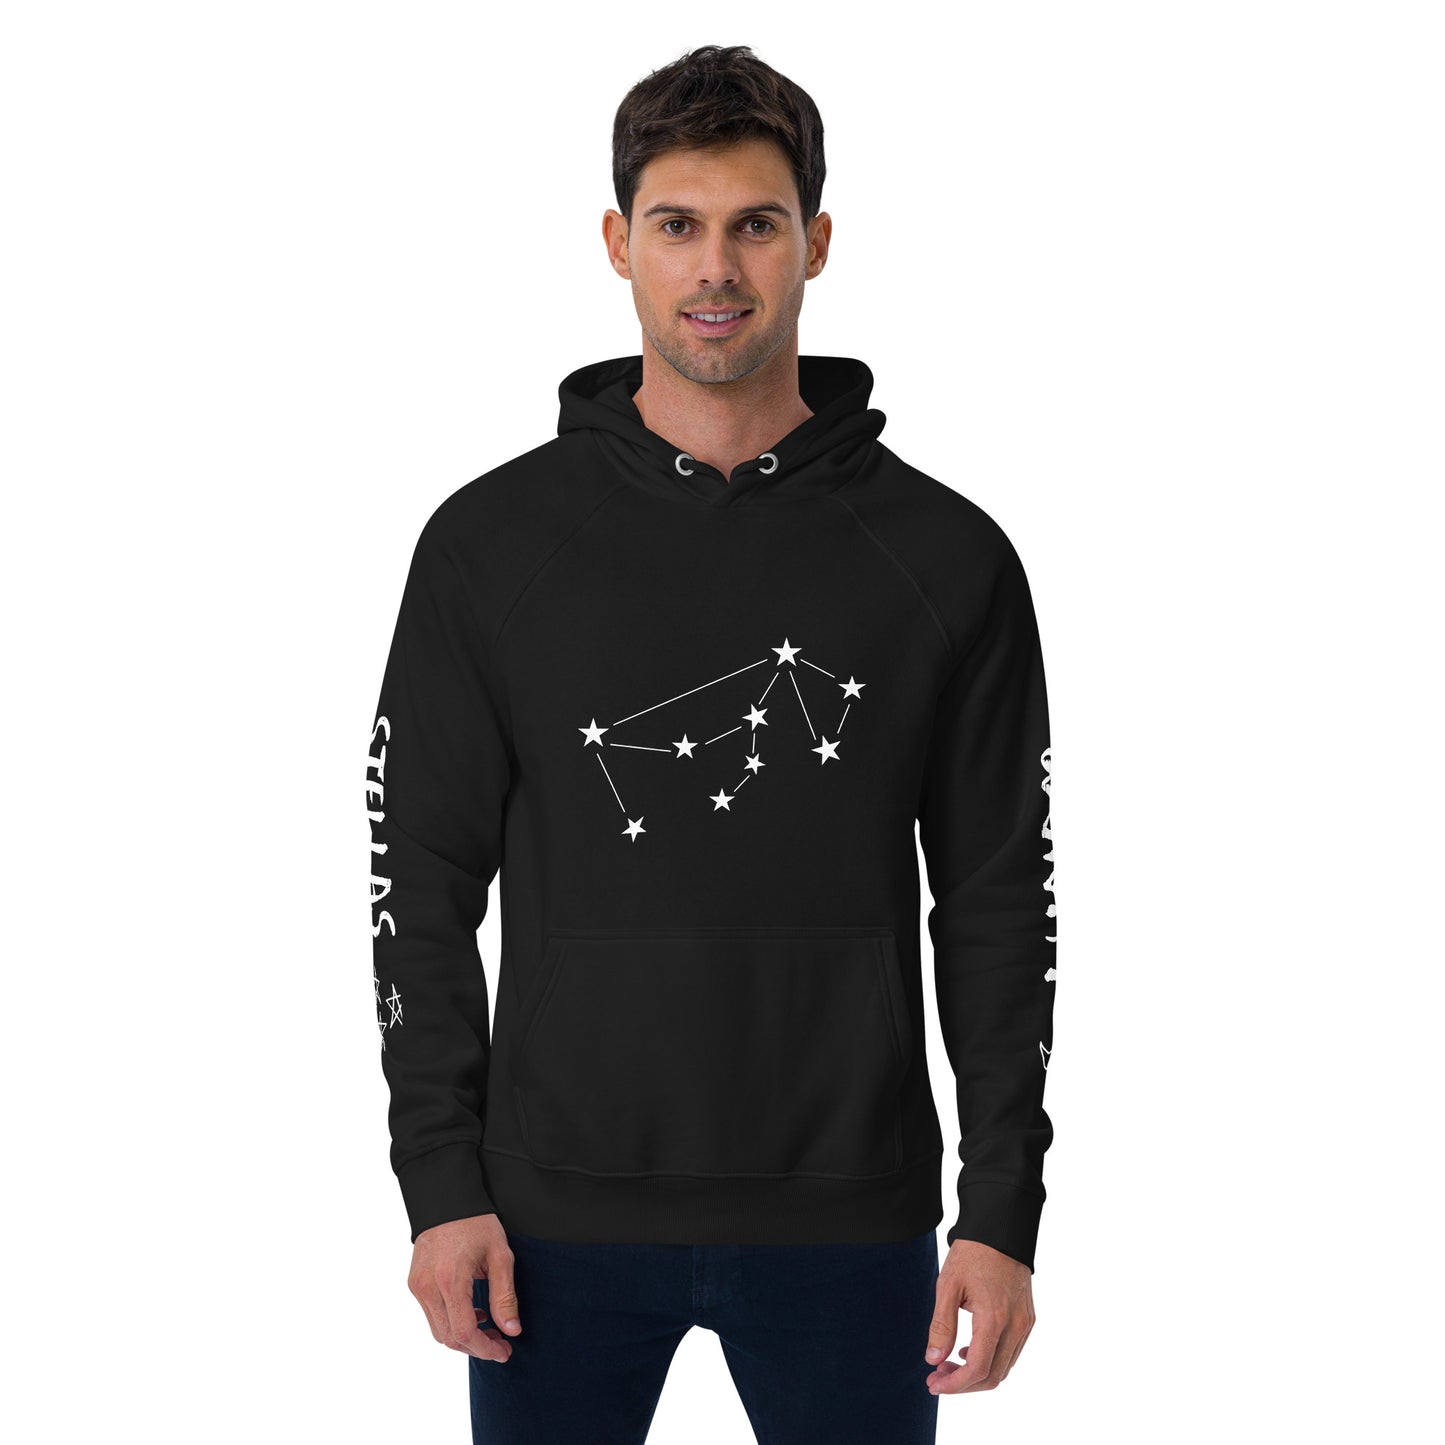 Lunam Et Stellas pullover hoodie